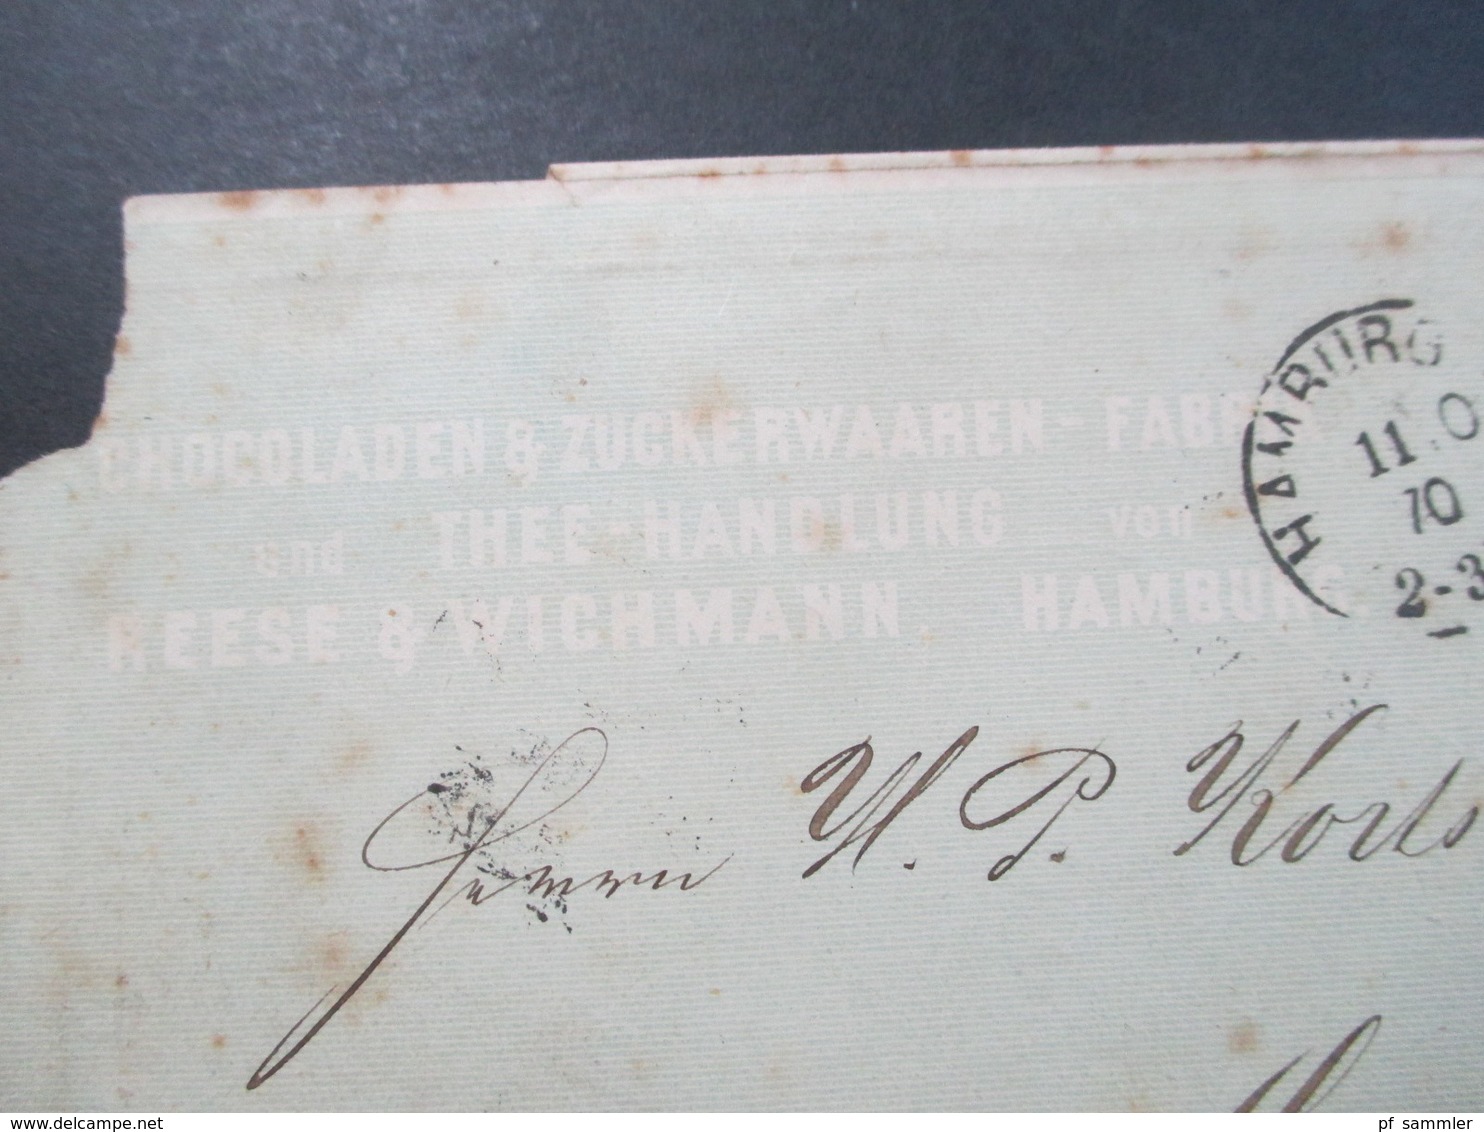 Altdeutschland NDP 1870 Nr. 16 EF Stempel K1 Hamburg T.A. Chocoladen & Zuckerwaren Fabrik Reese & Wichmann Hamburg - Covers & Documents